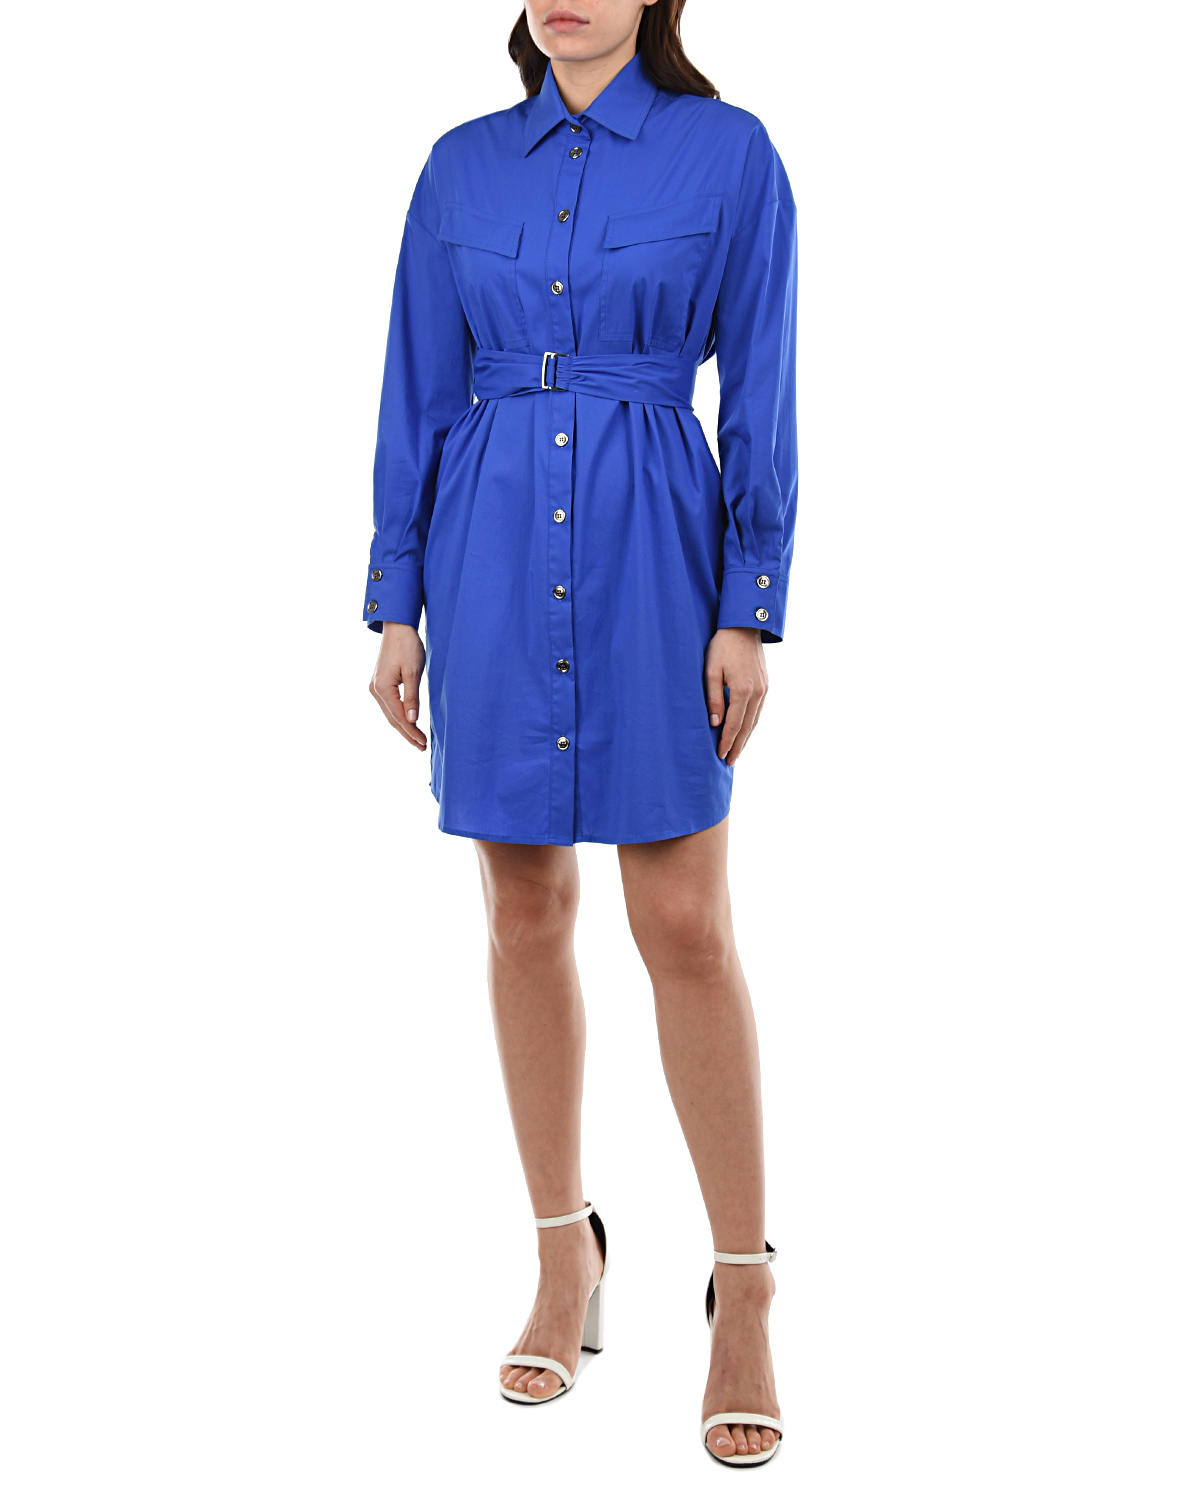 Синее платье-рубашка OLIMPIA Pietro Brunelli, размер 40, цвет синий - фото 4